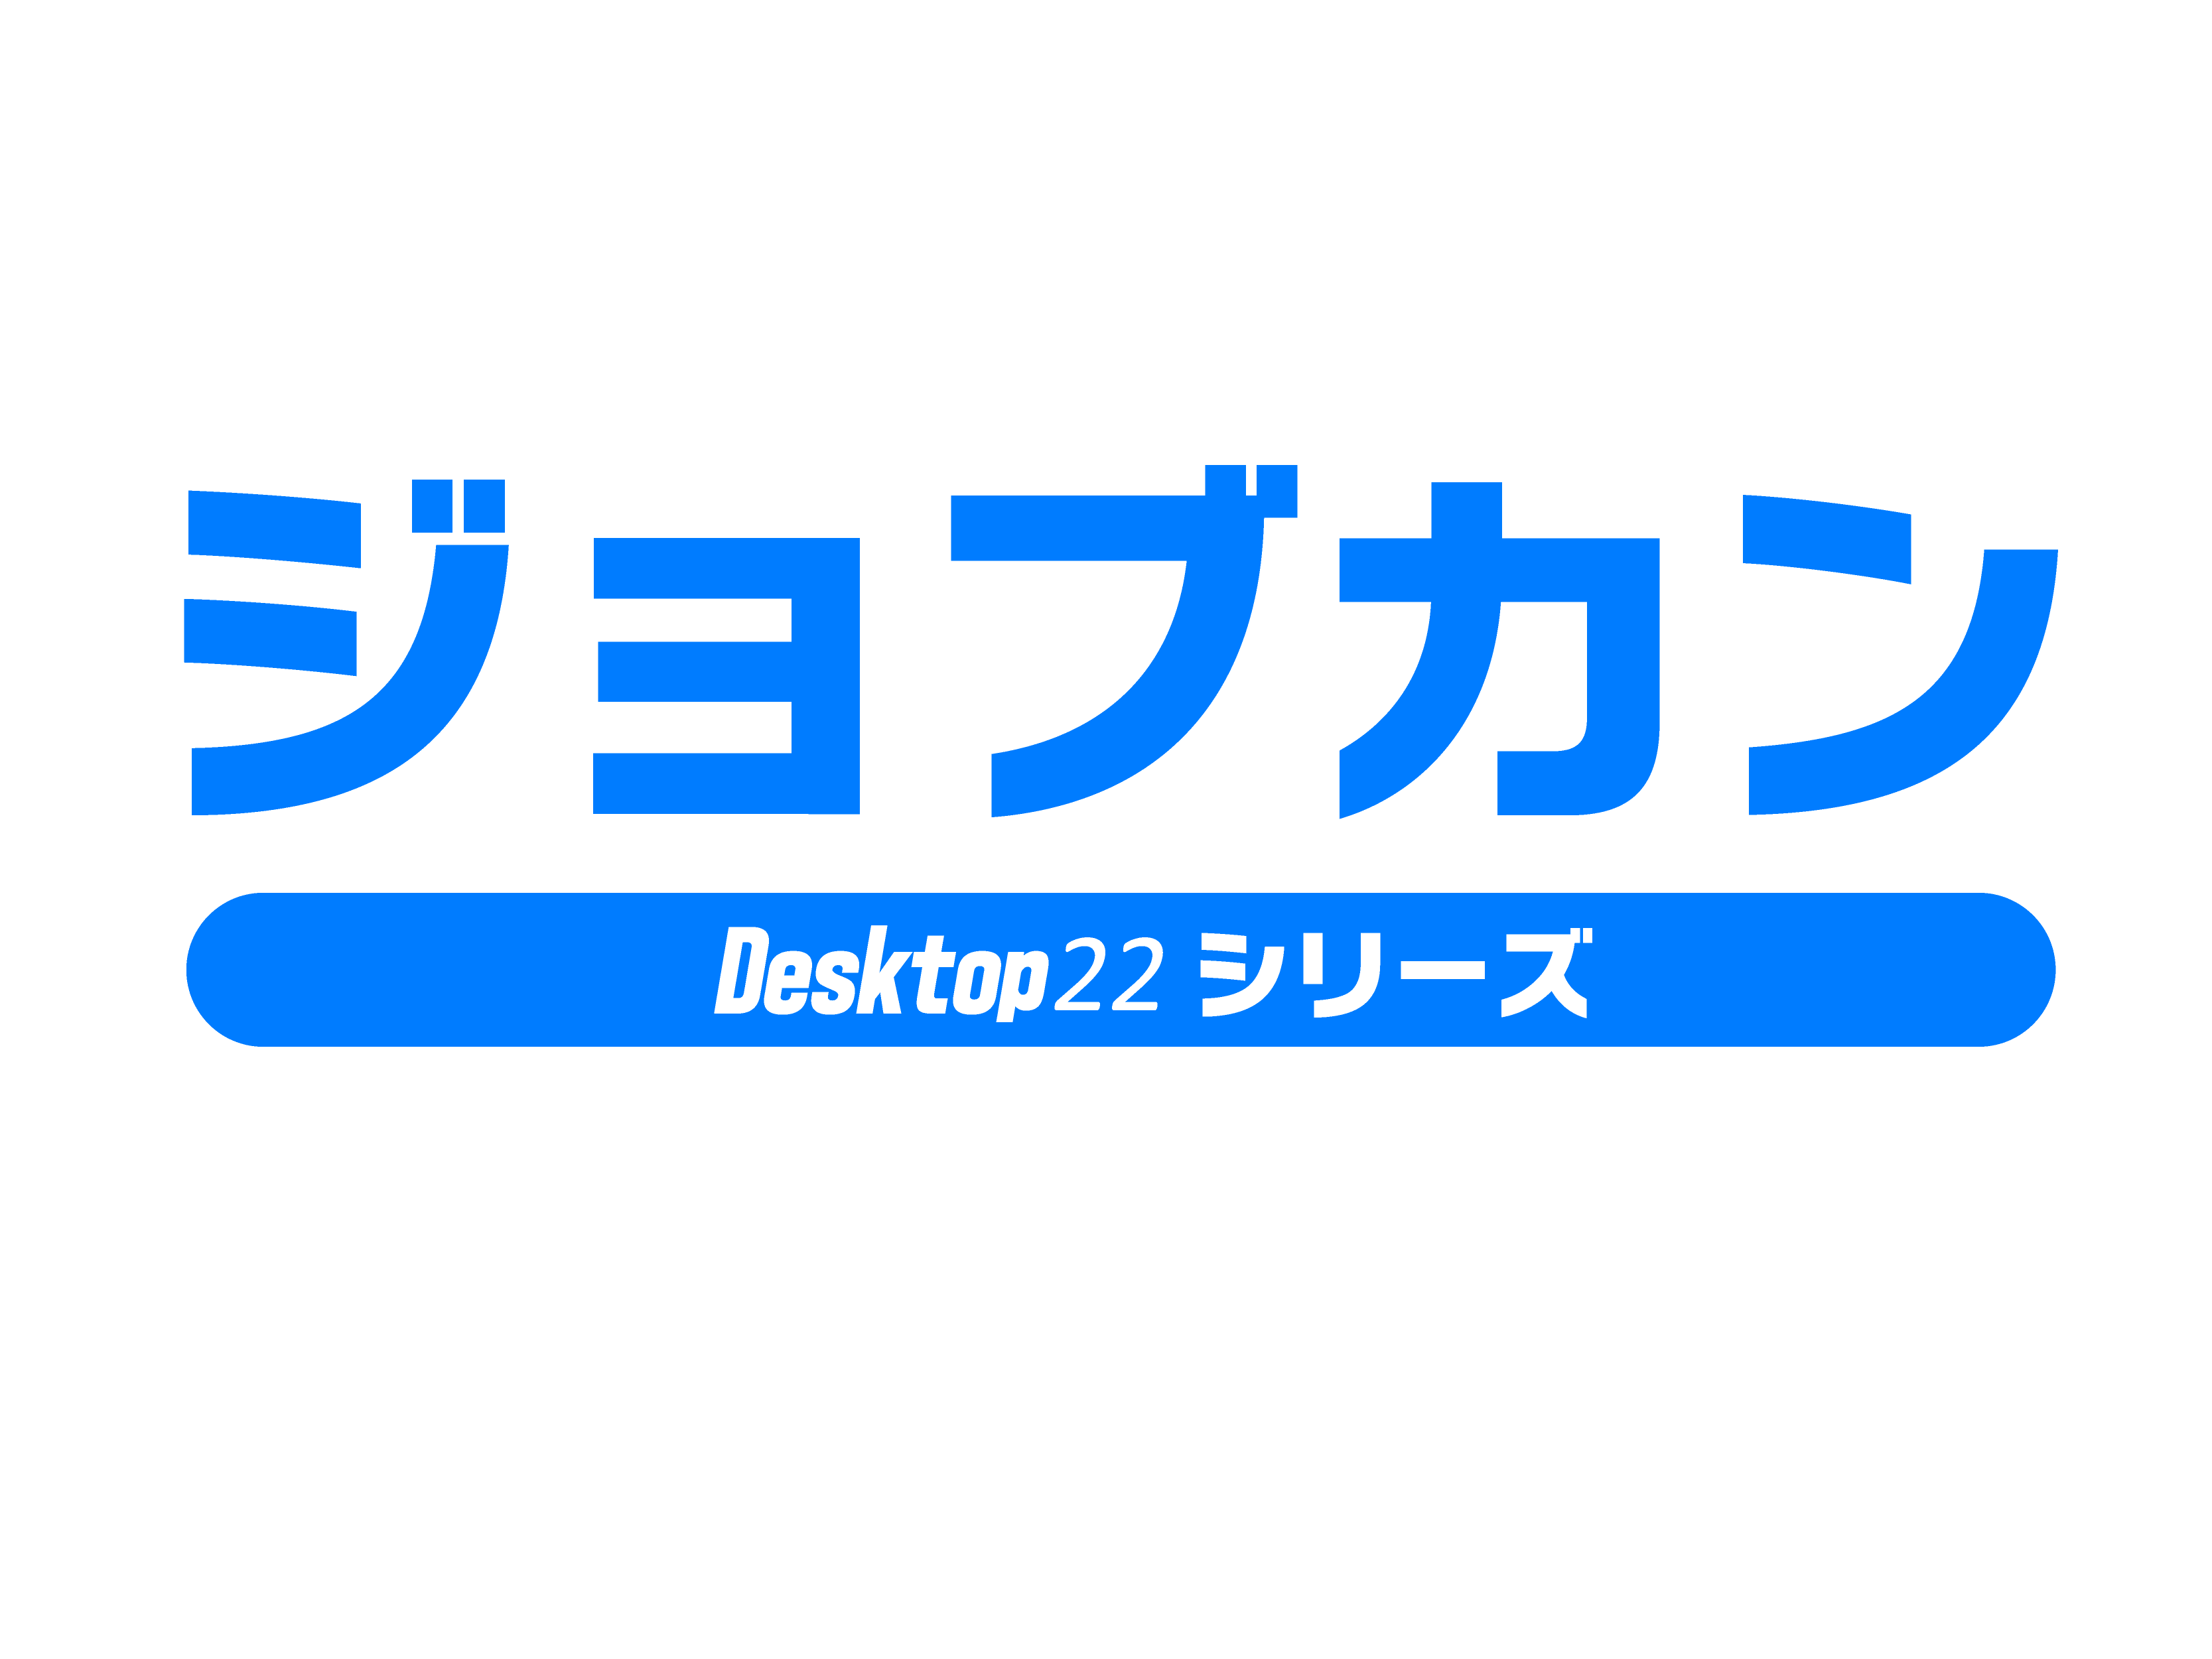 ジョブカン現金 / 預金出納帳 Desktop22 | ジョブカンマーケット